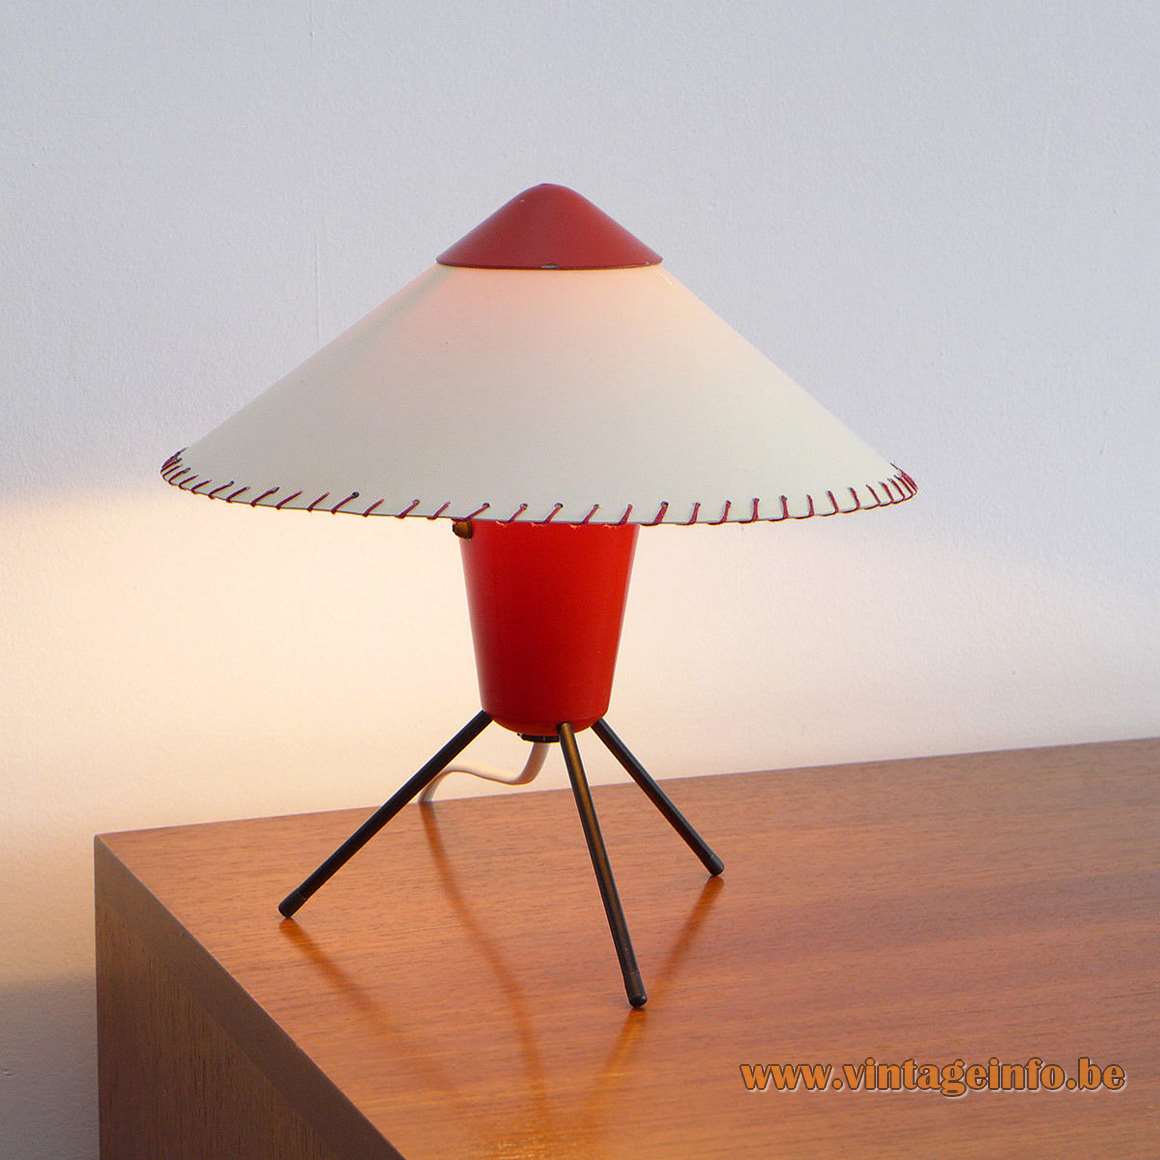 Helena Frantova tripod table lamp conical red tube cone lampshade Zukov Czech Republic Josef Hurka 1950s 